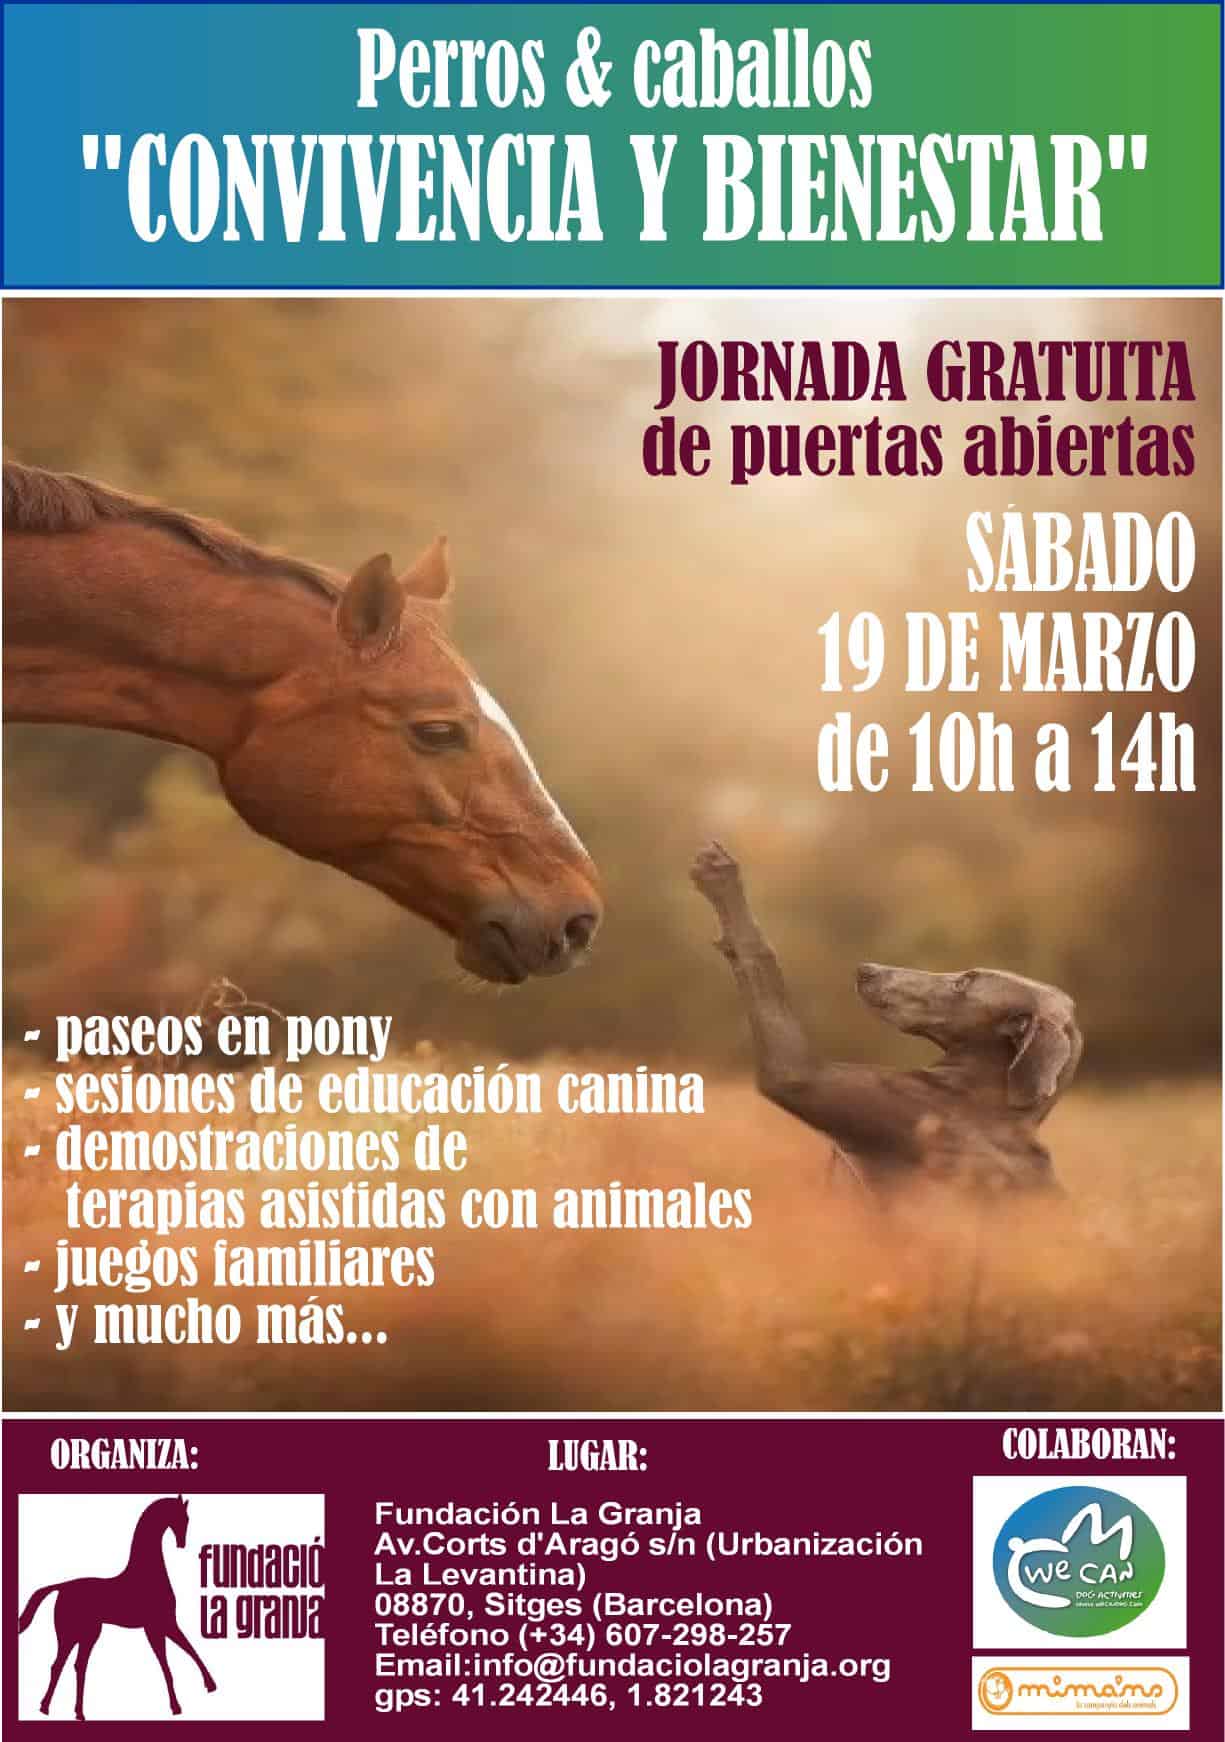 JORNADA GRATUITA DE PUERTAS ABIERTAS - FUNDACIÓ LA GRANJA